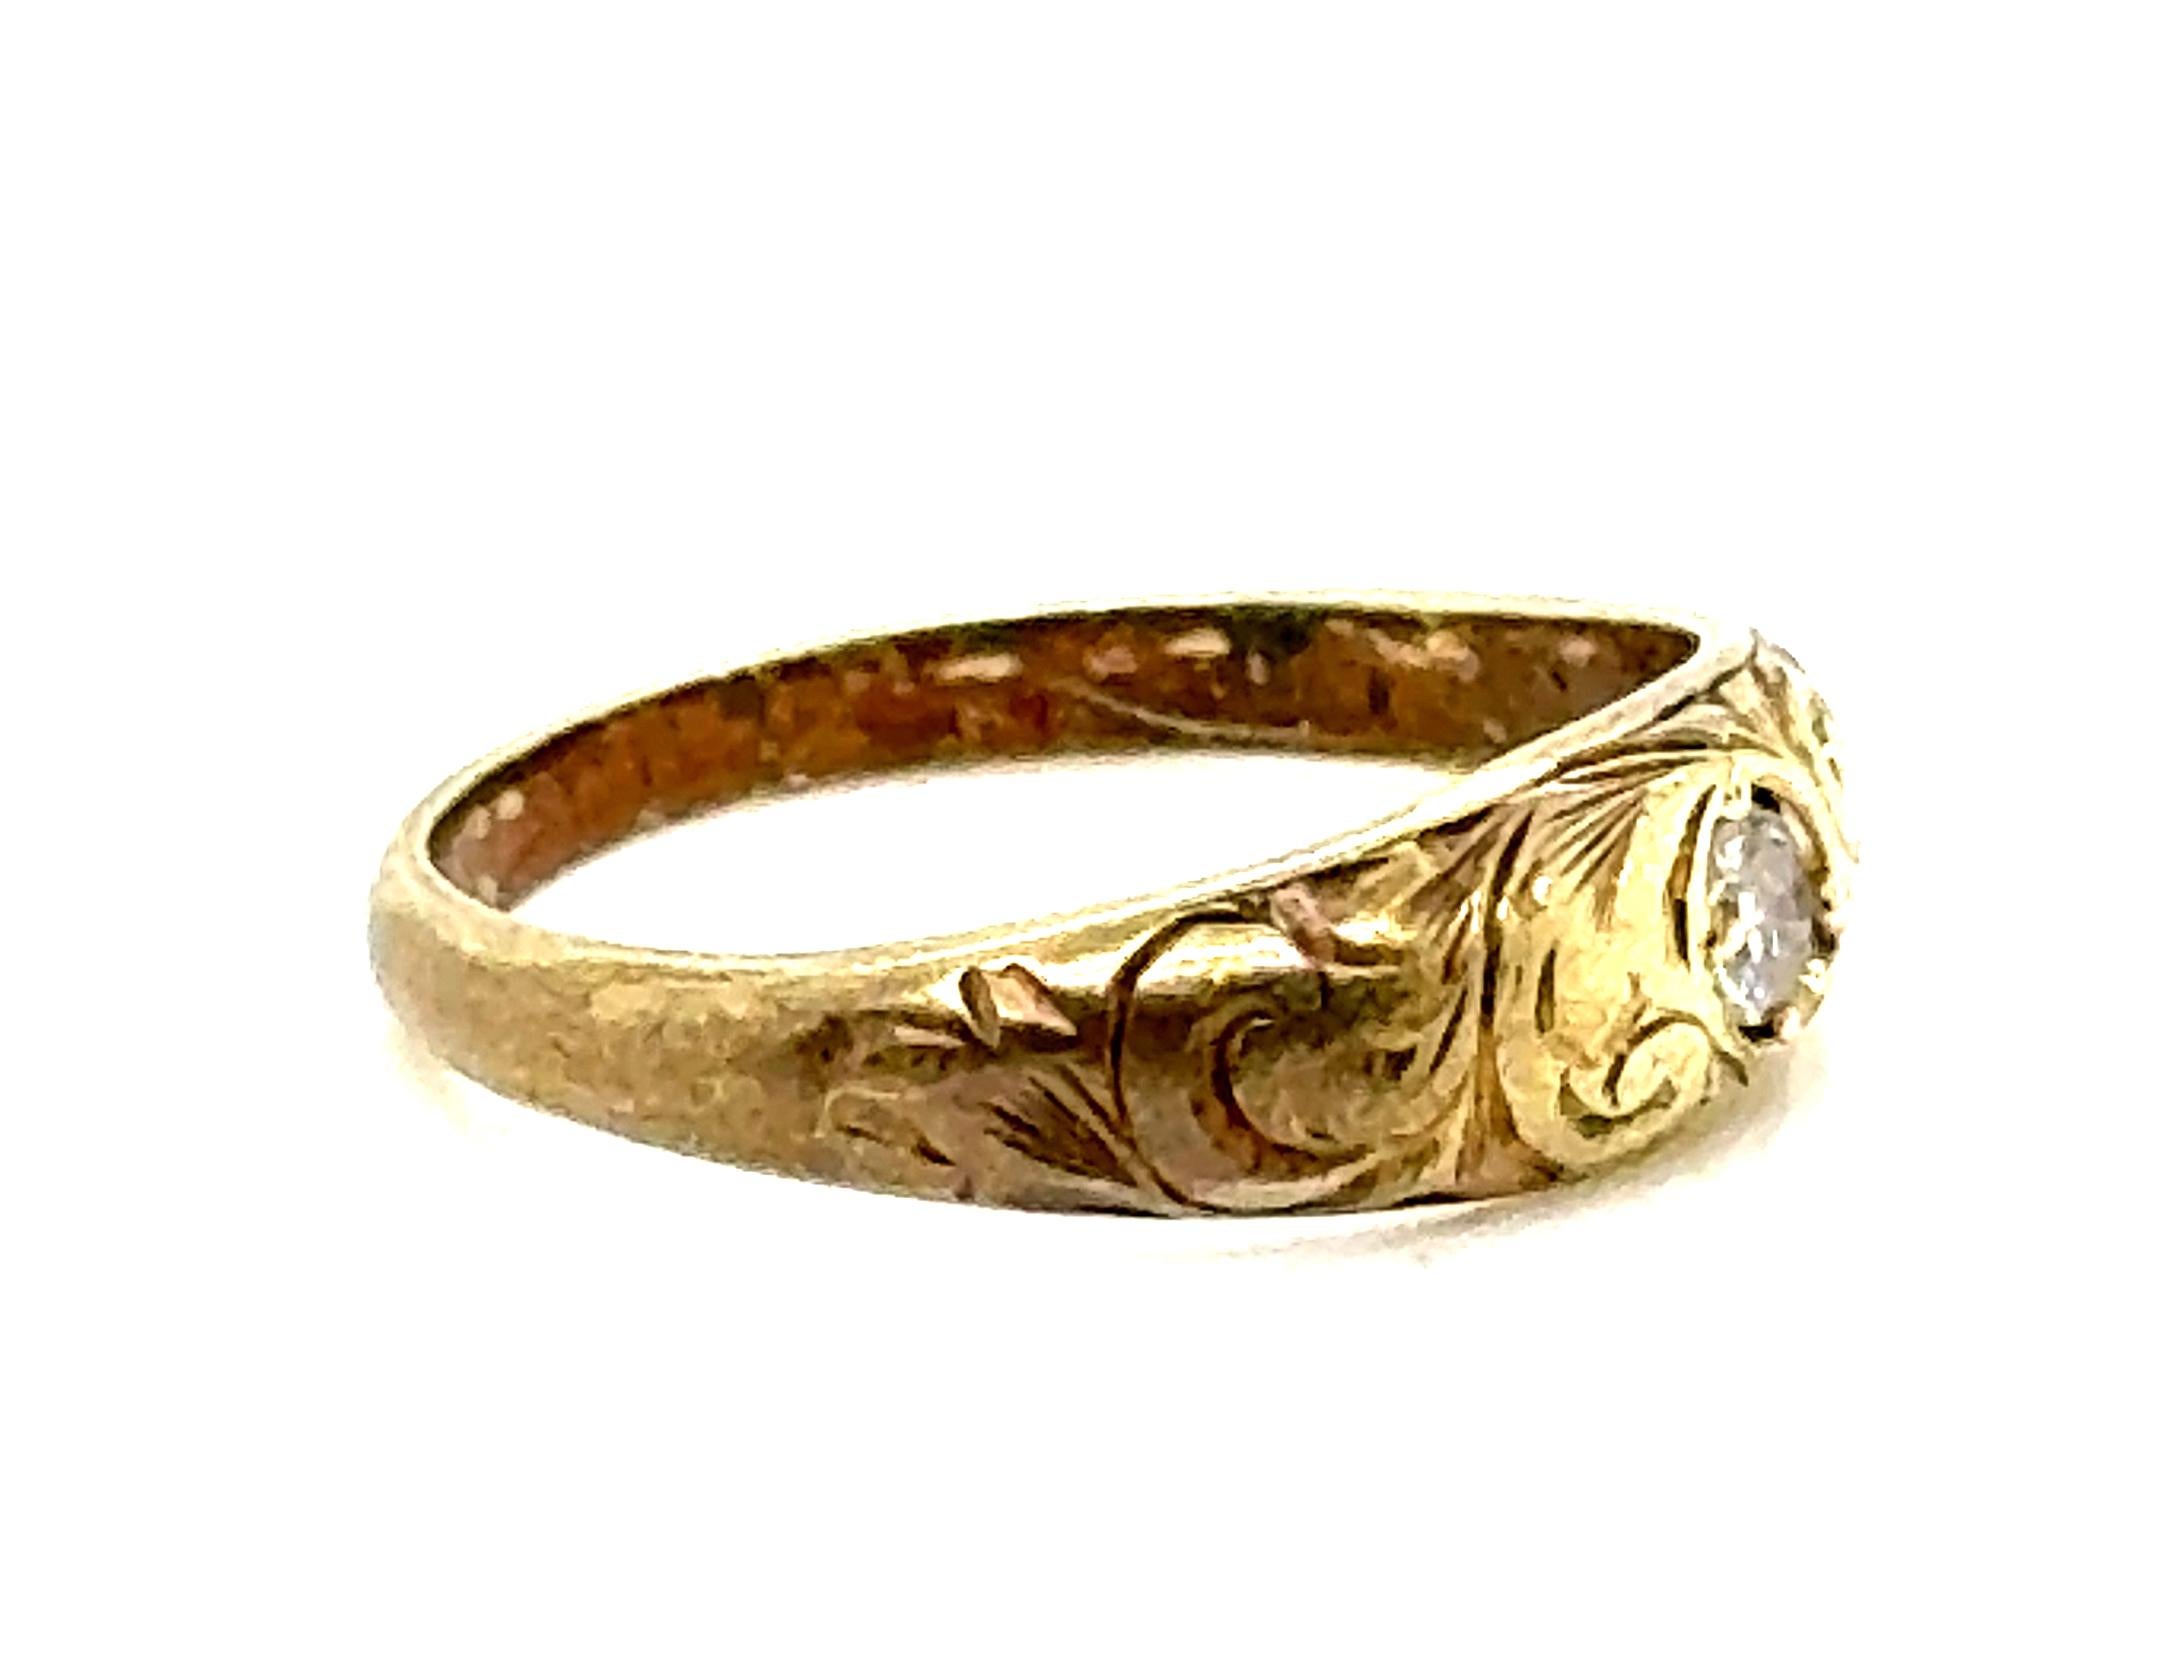 Véritable Original Antique des années 1890 Victorian Diamond Baby Ring 14K Yellow Gold  Allsopp Bros


Comprend un véritable diamant taille unique de 0,04 ct de couleur naturelle antique.

Marque déposée Allsopp Bros

Une superbe patine prouve son